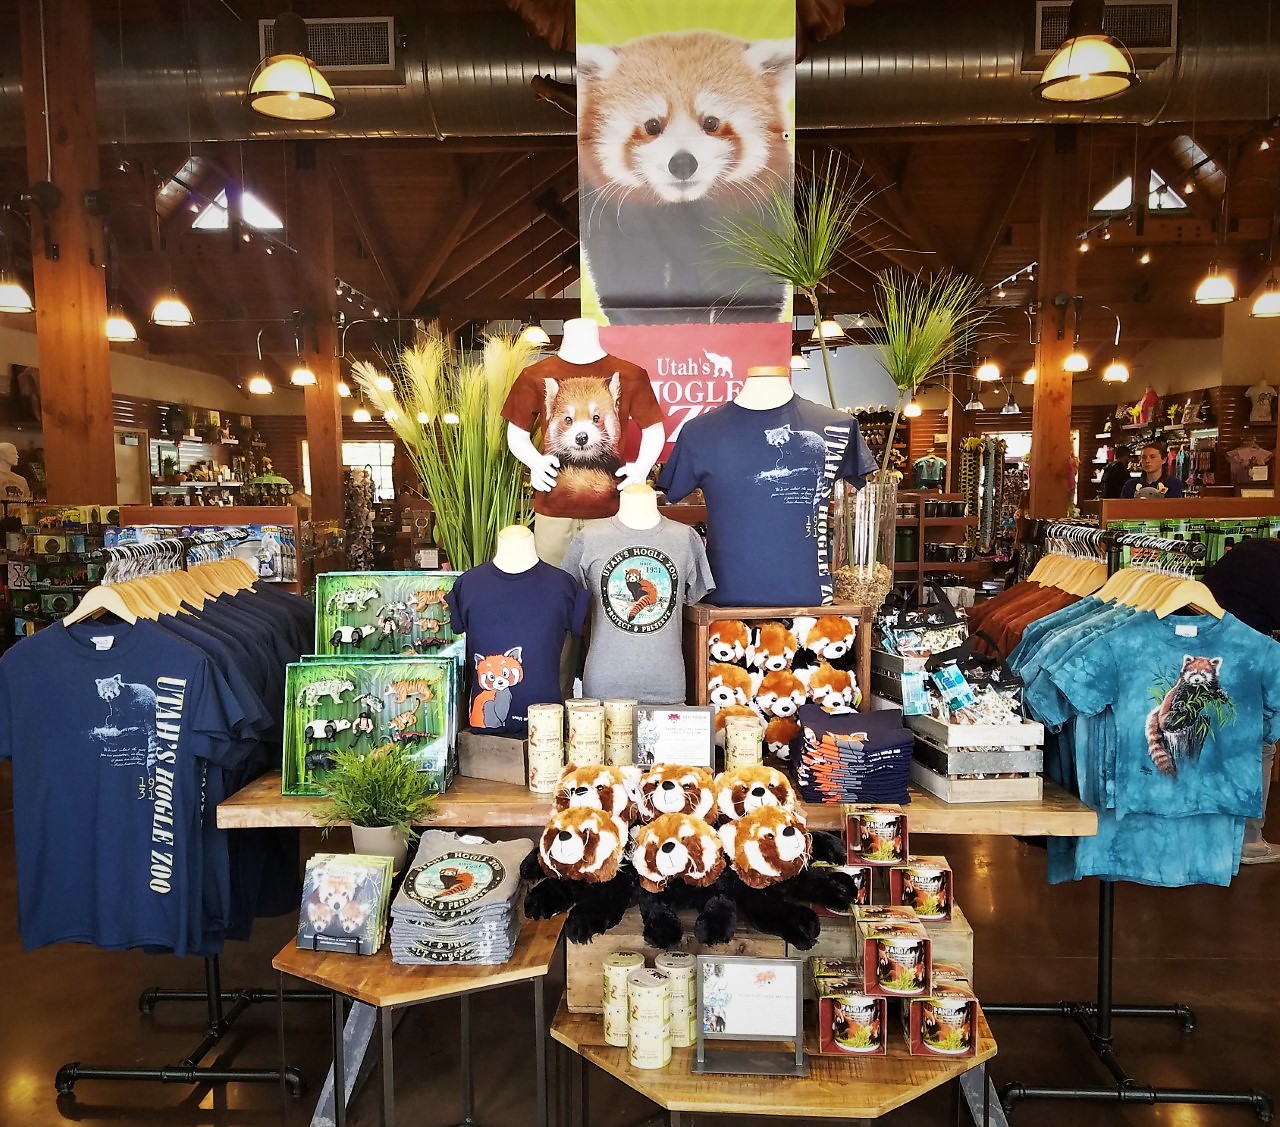 Gift Shop Red Panda Display